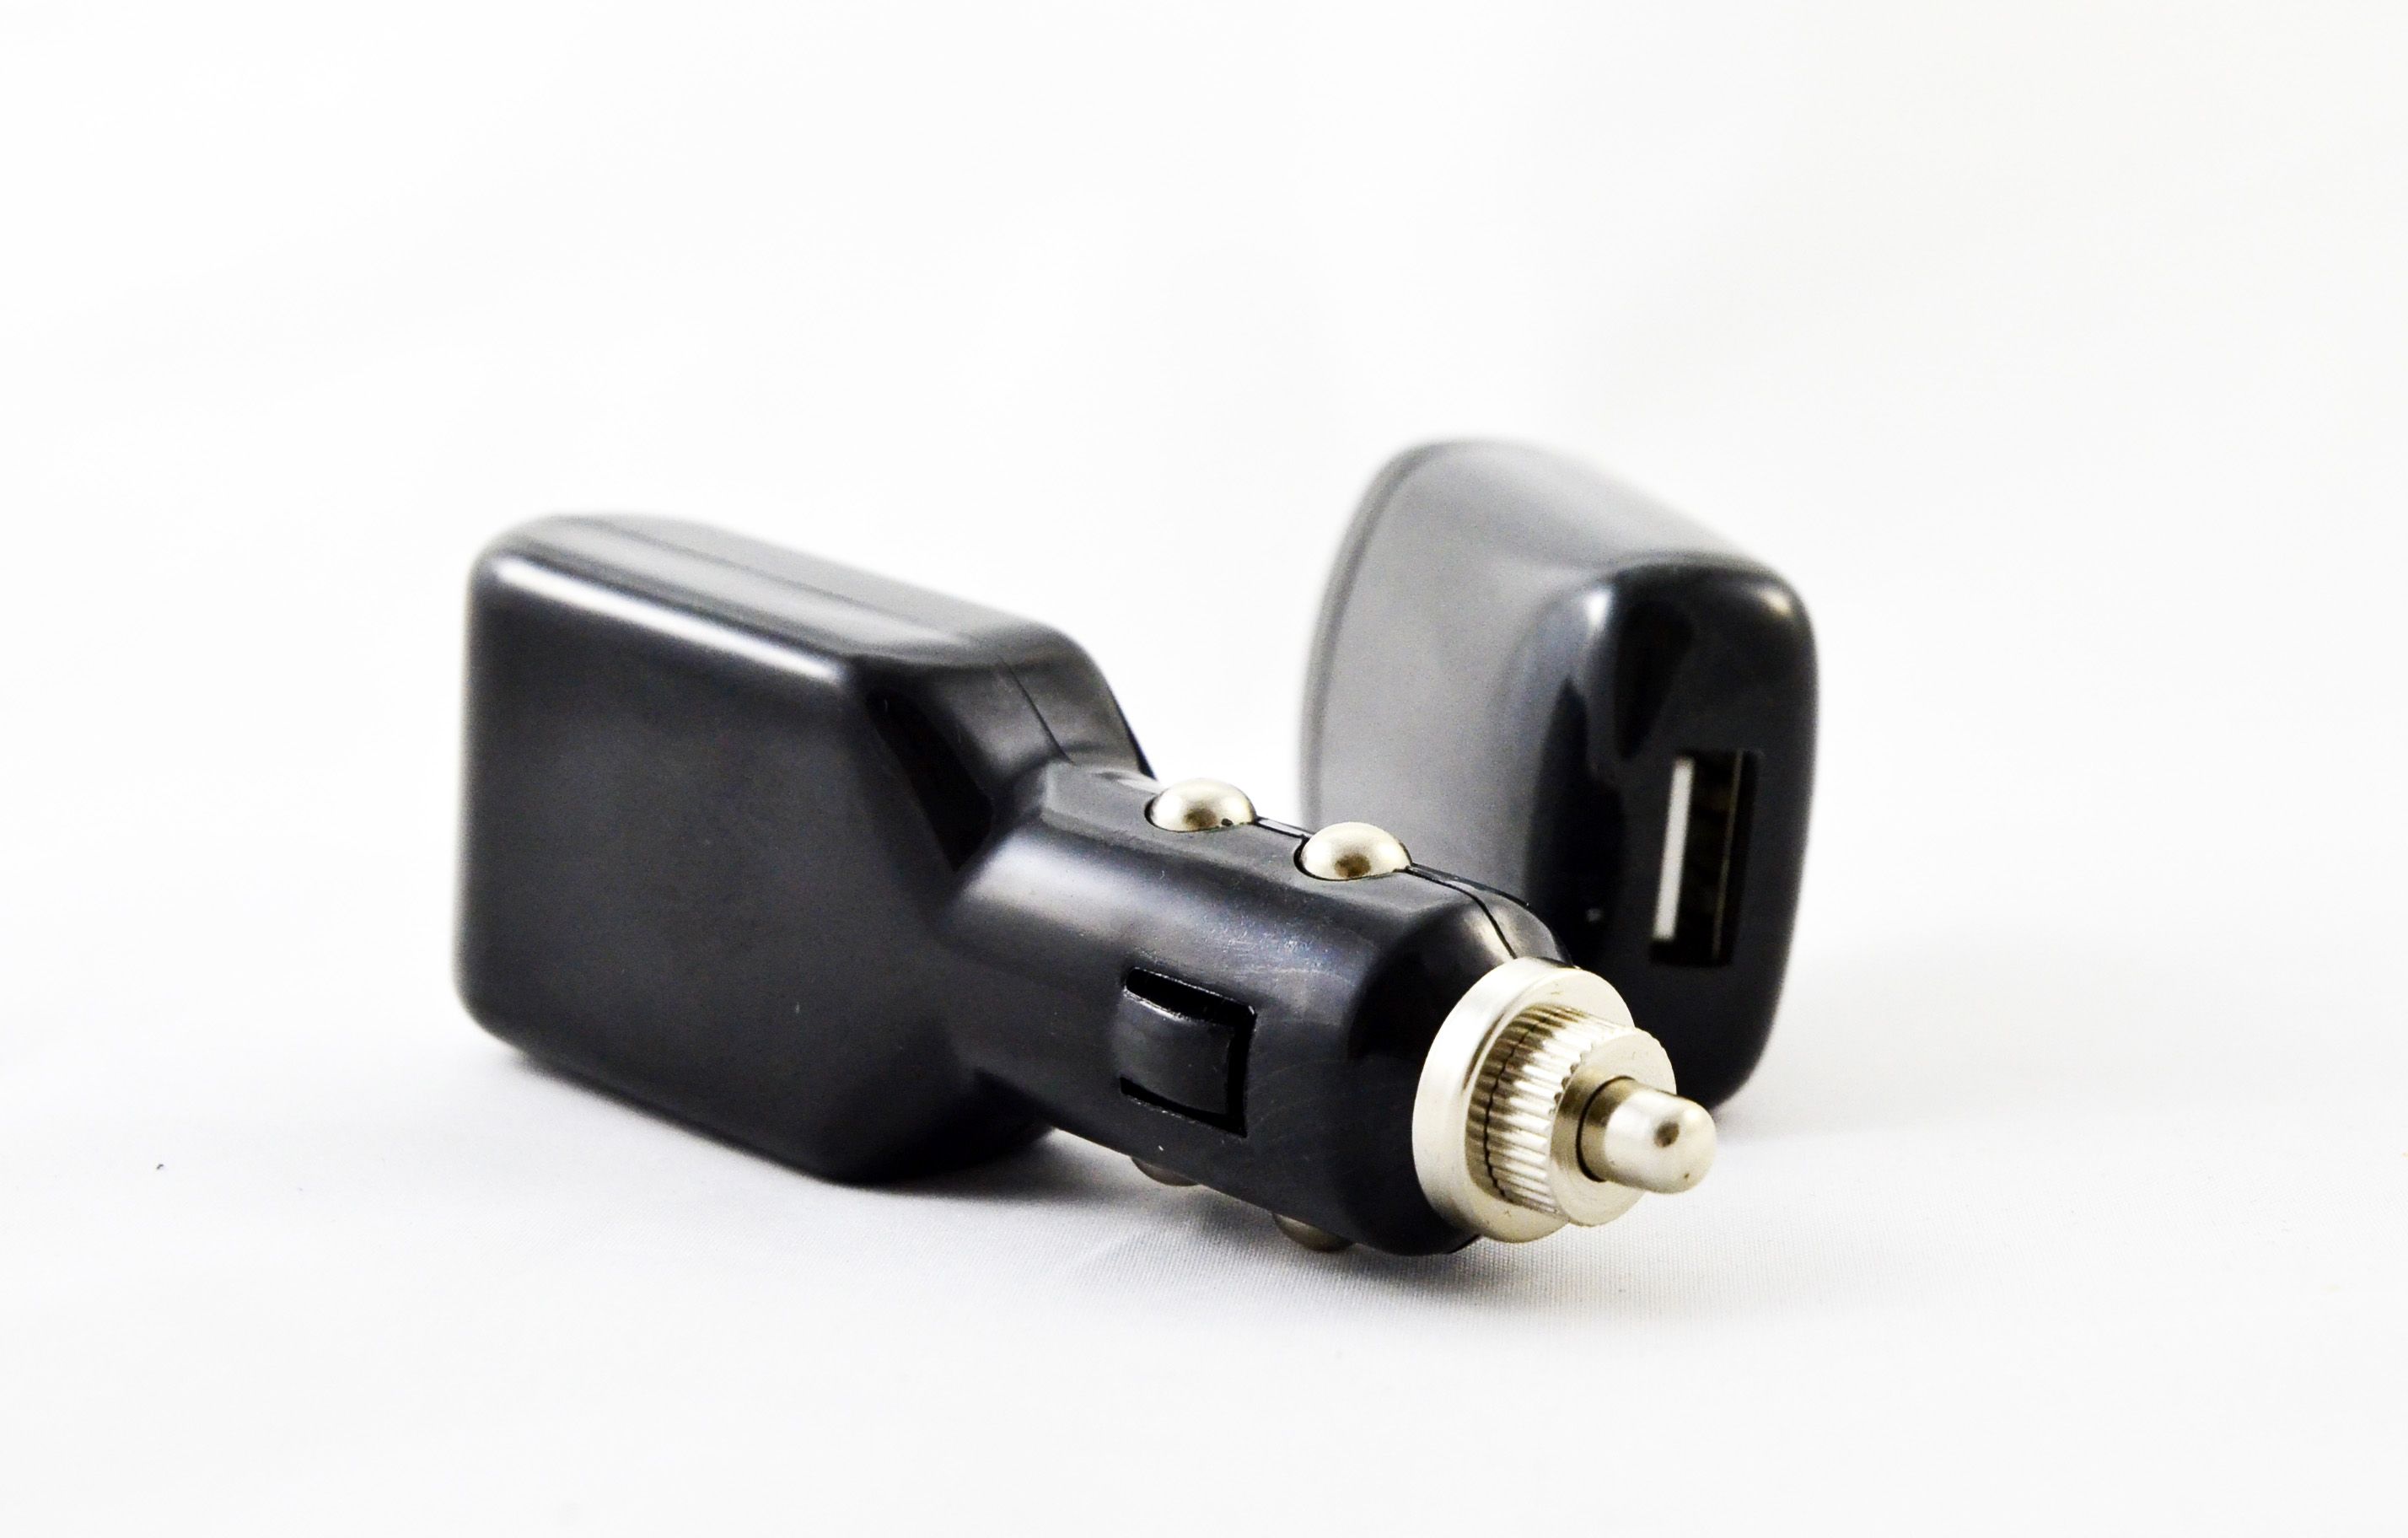 TEC005, CABLE USB MULTIPUERTOS
Cable Adaptador en color negro con 10 entradas diferentes.
Incluye contacto para Casa y Auto.